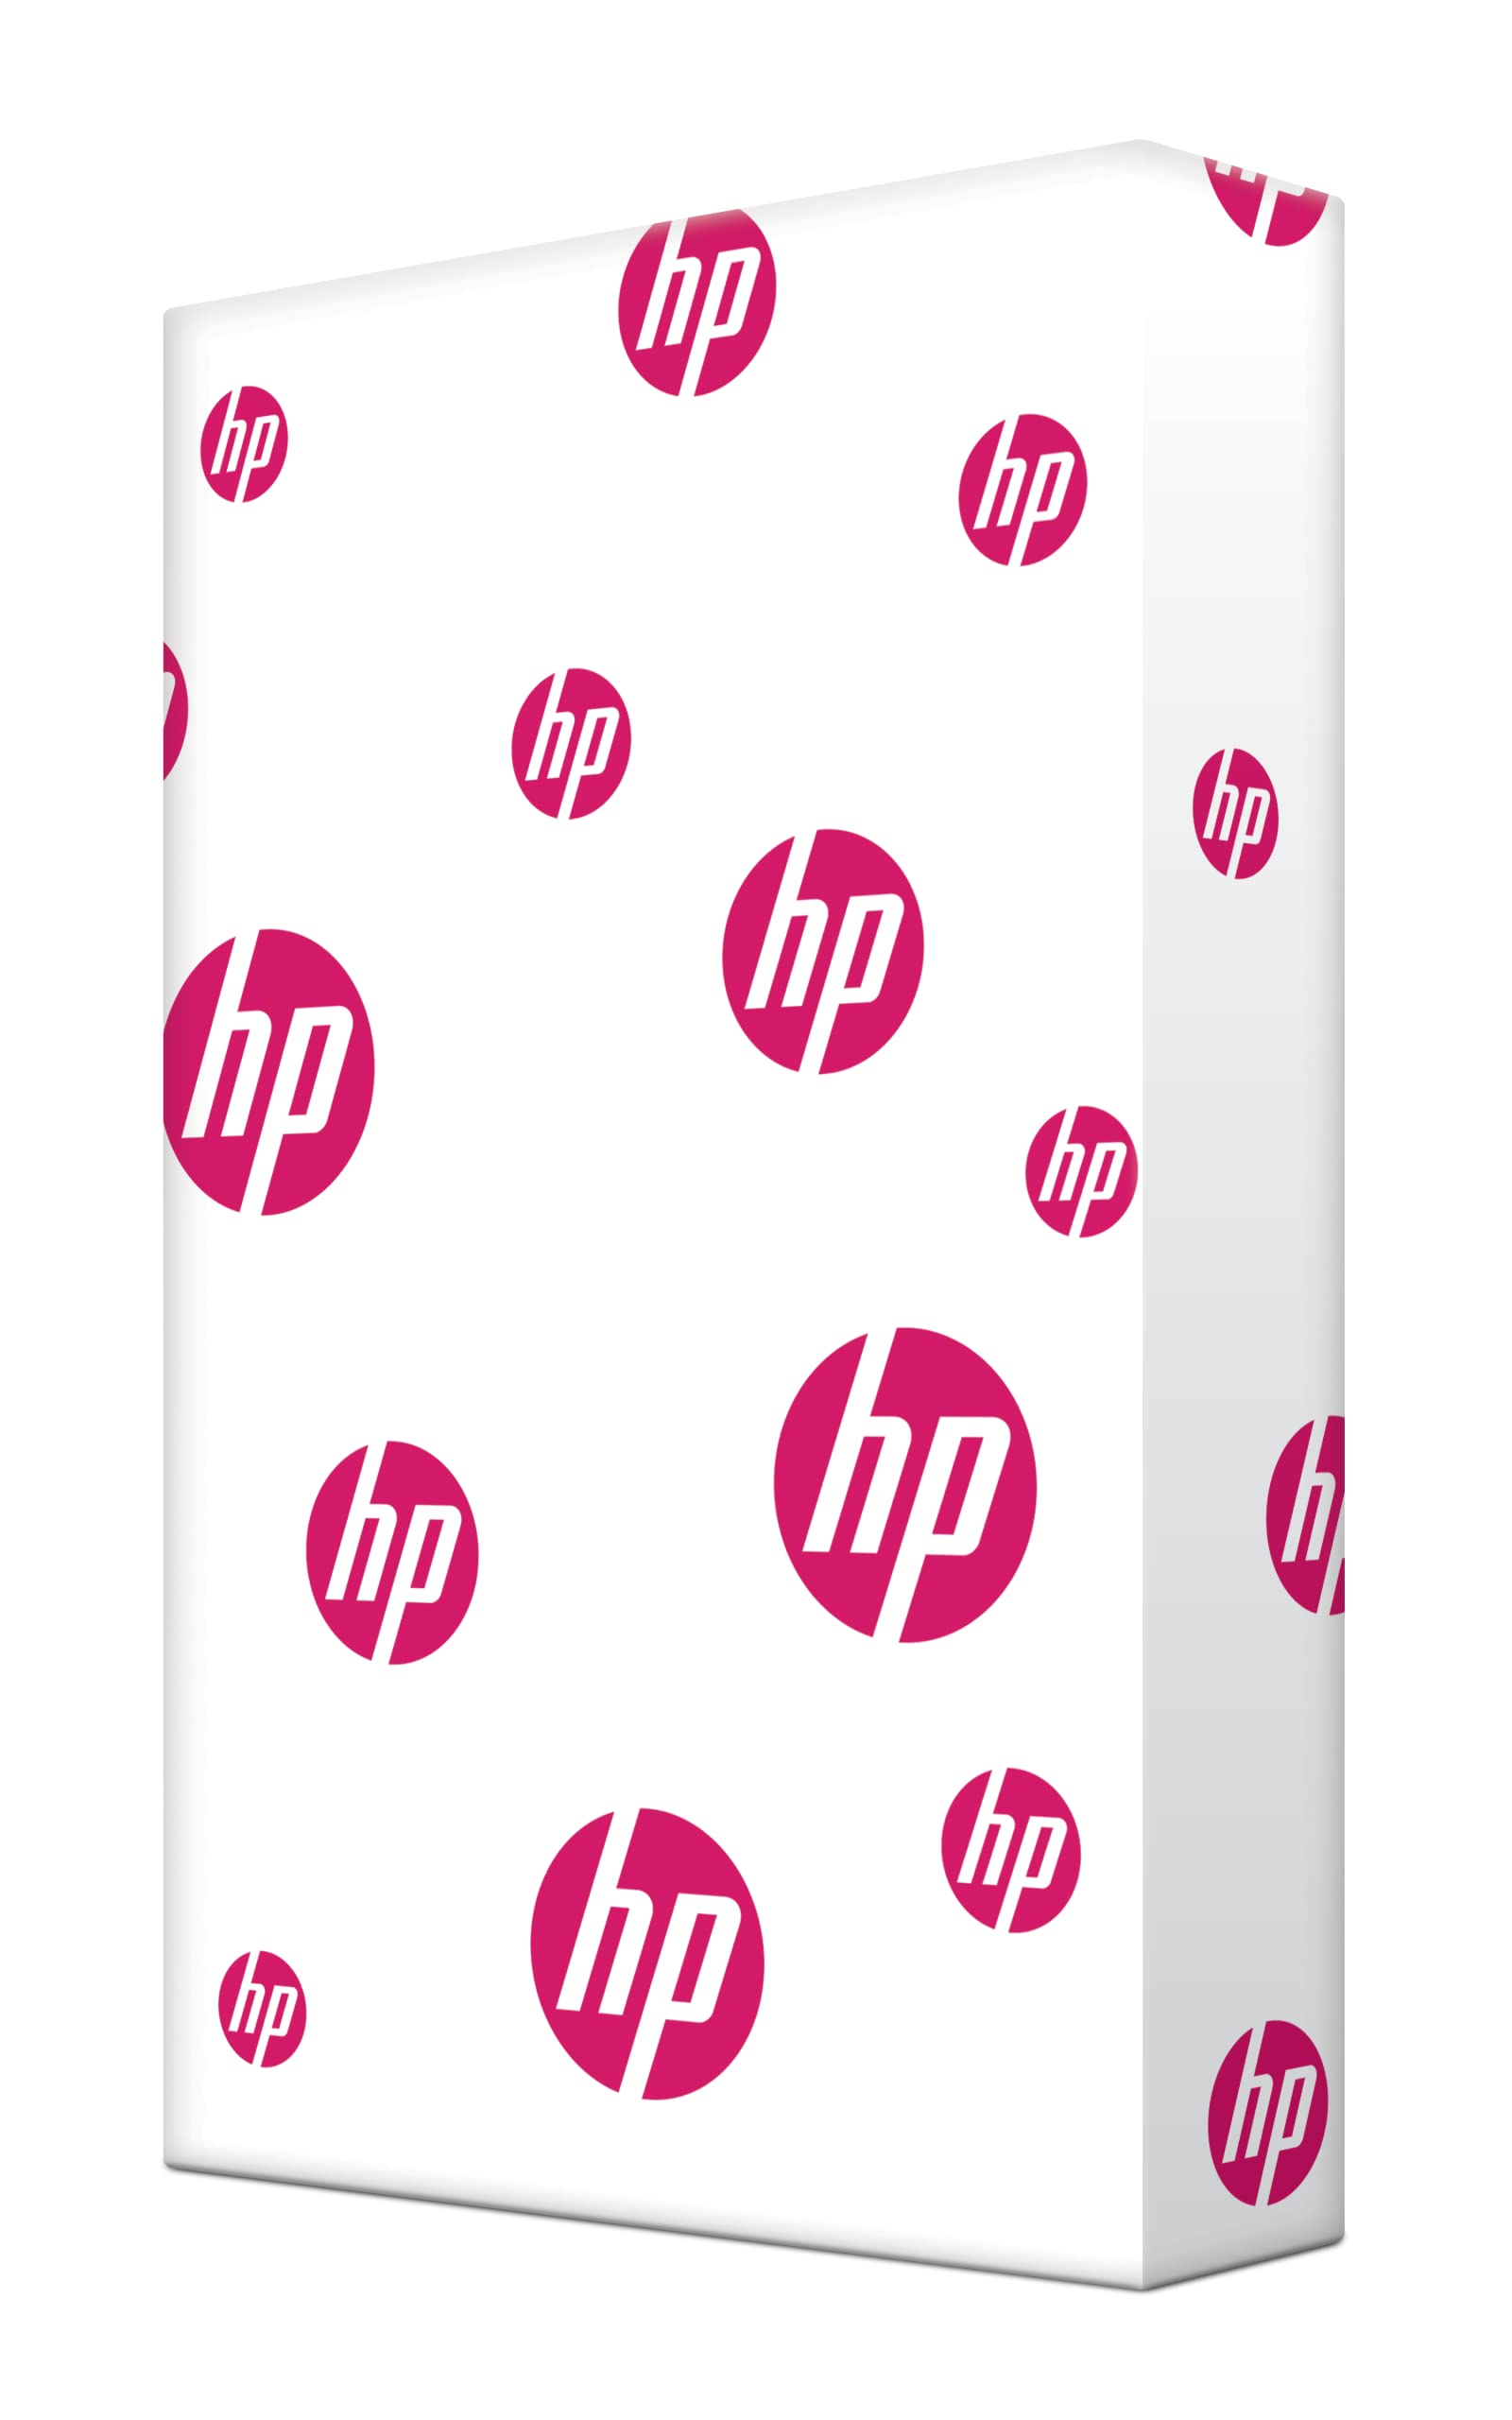 HP Papers Papel para impresora HP | Papel 11x17 | Multiusos 20 lb |1 resma - 500 hojas |96 brillantes | Fabricado en EE. UU. - Certificado FSC | 172001R